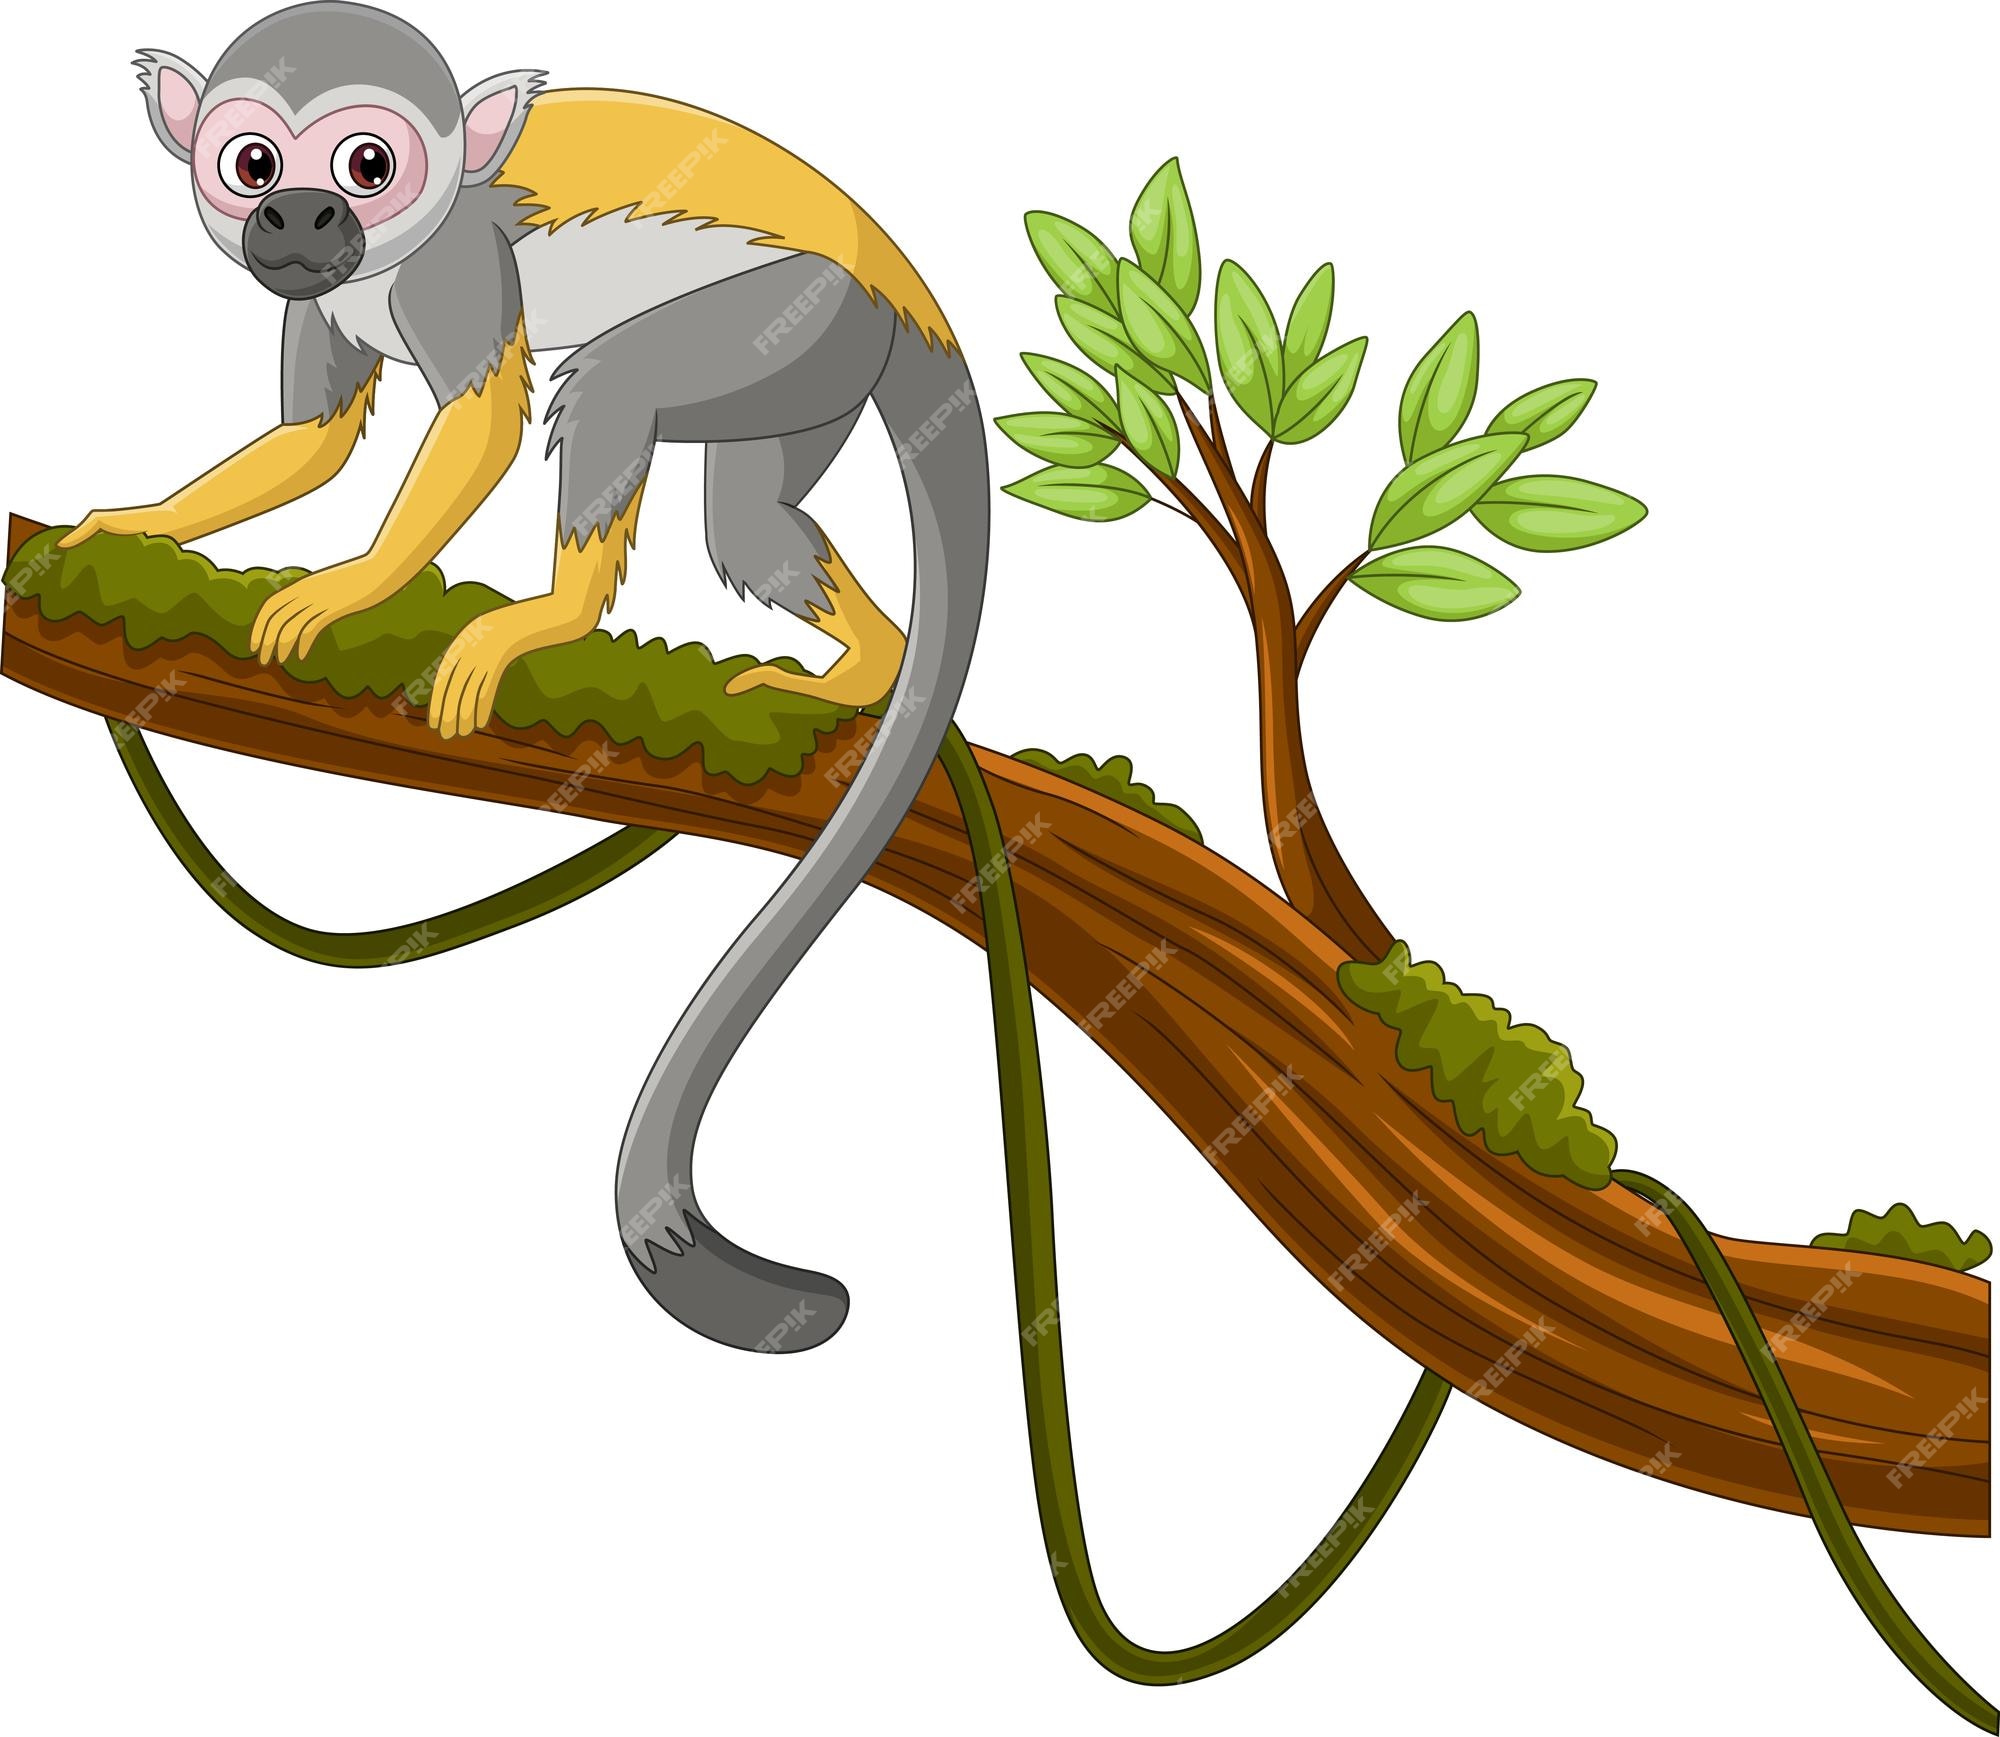 123 Macaco Prego Fotos, Imagens e Fundo para Download Gratuito - Pngtree